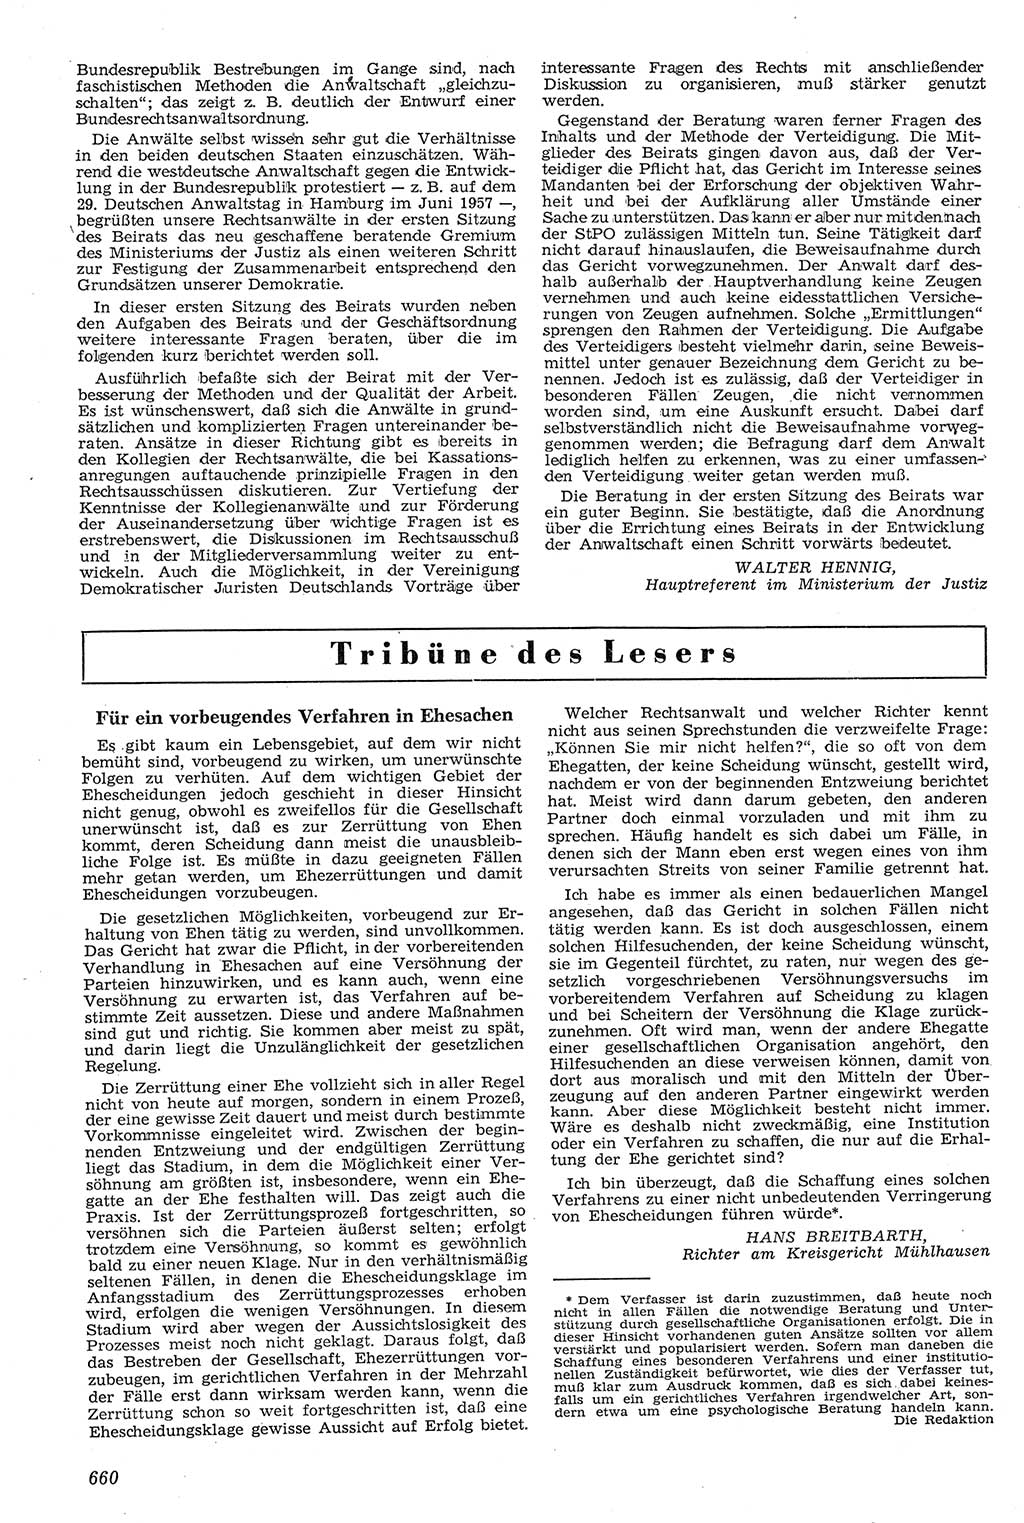 Neue Justiz (NJ), Zeitschrift für Recht und Rechtswissenschaft [Deutsche Demokratische Republik (DDR)], 11. Jahrgang 1957, Seite 660 (NJ DDR 1957, S. 660)